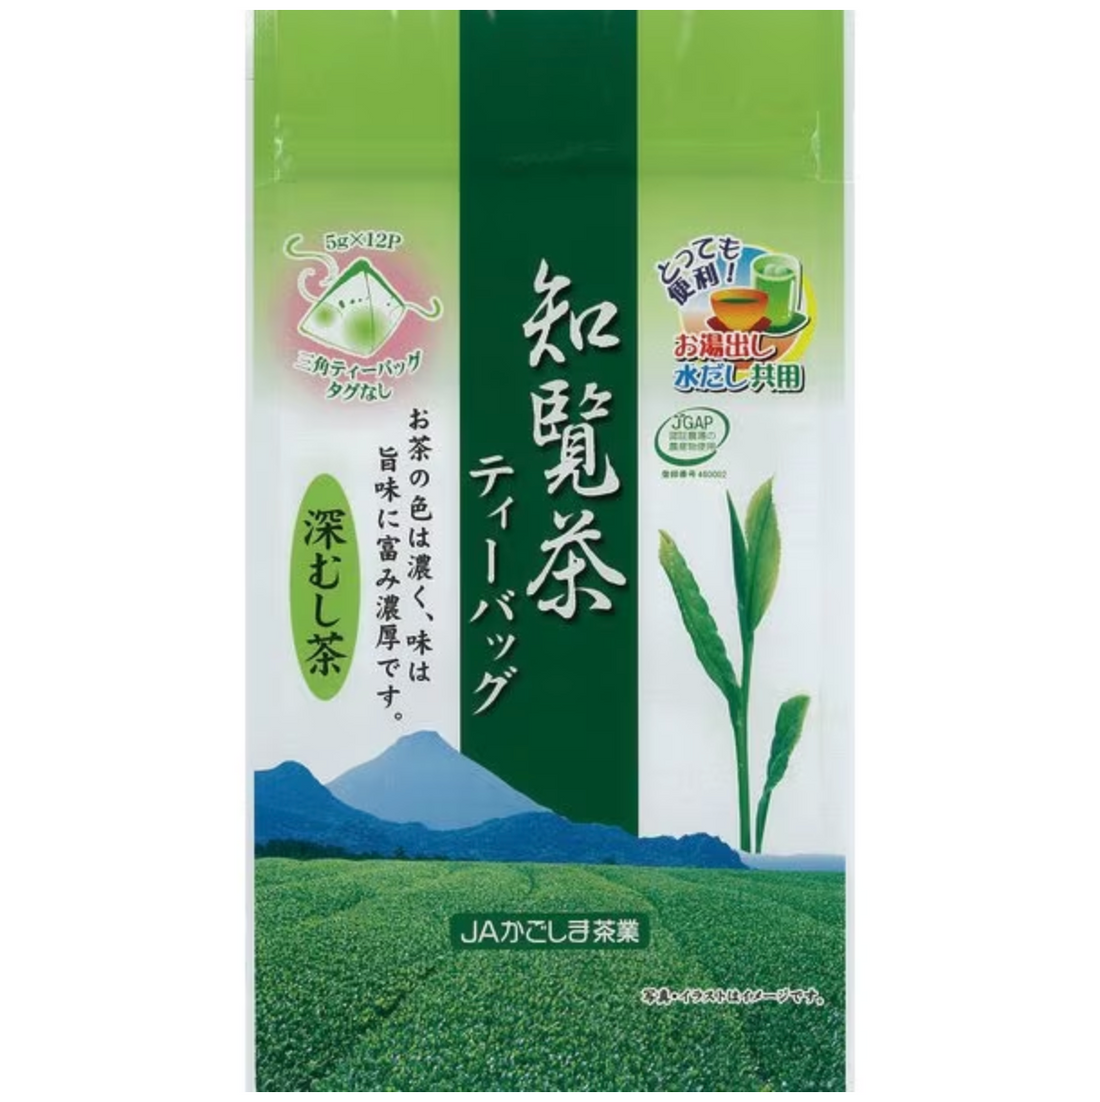 JA Kagoshima Tea Industry Chiran Tea Deep Steamed Tea Tea Bag (5g x 12P) 60g